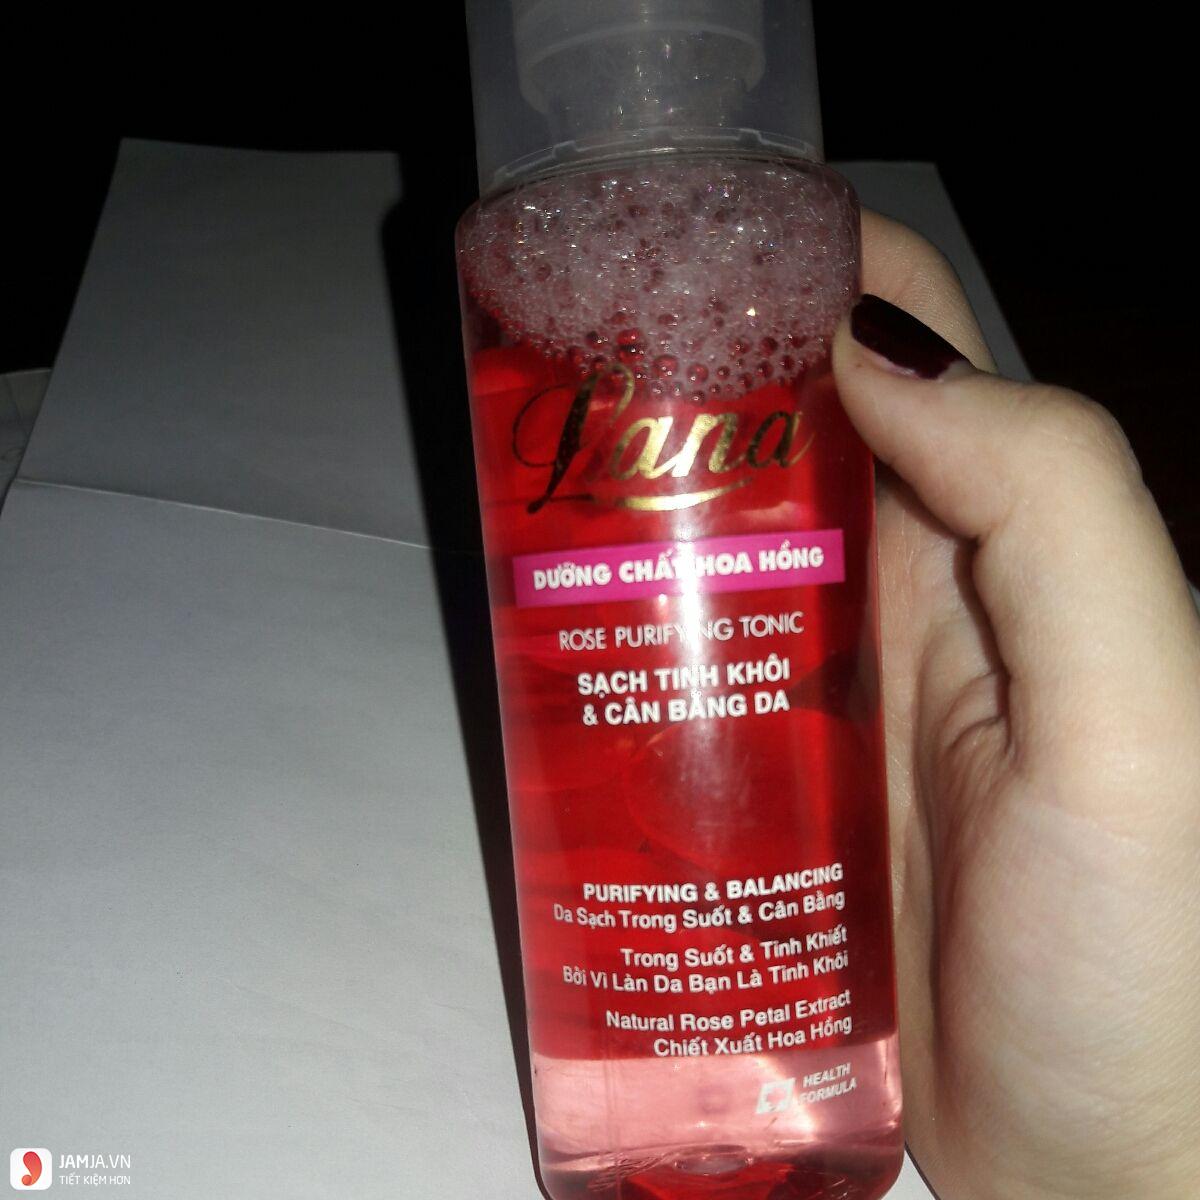 Nước hoa hồng Lana Rose Purifying Tonic dành cho da thường 4